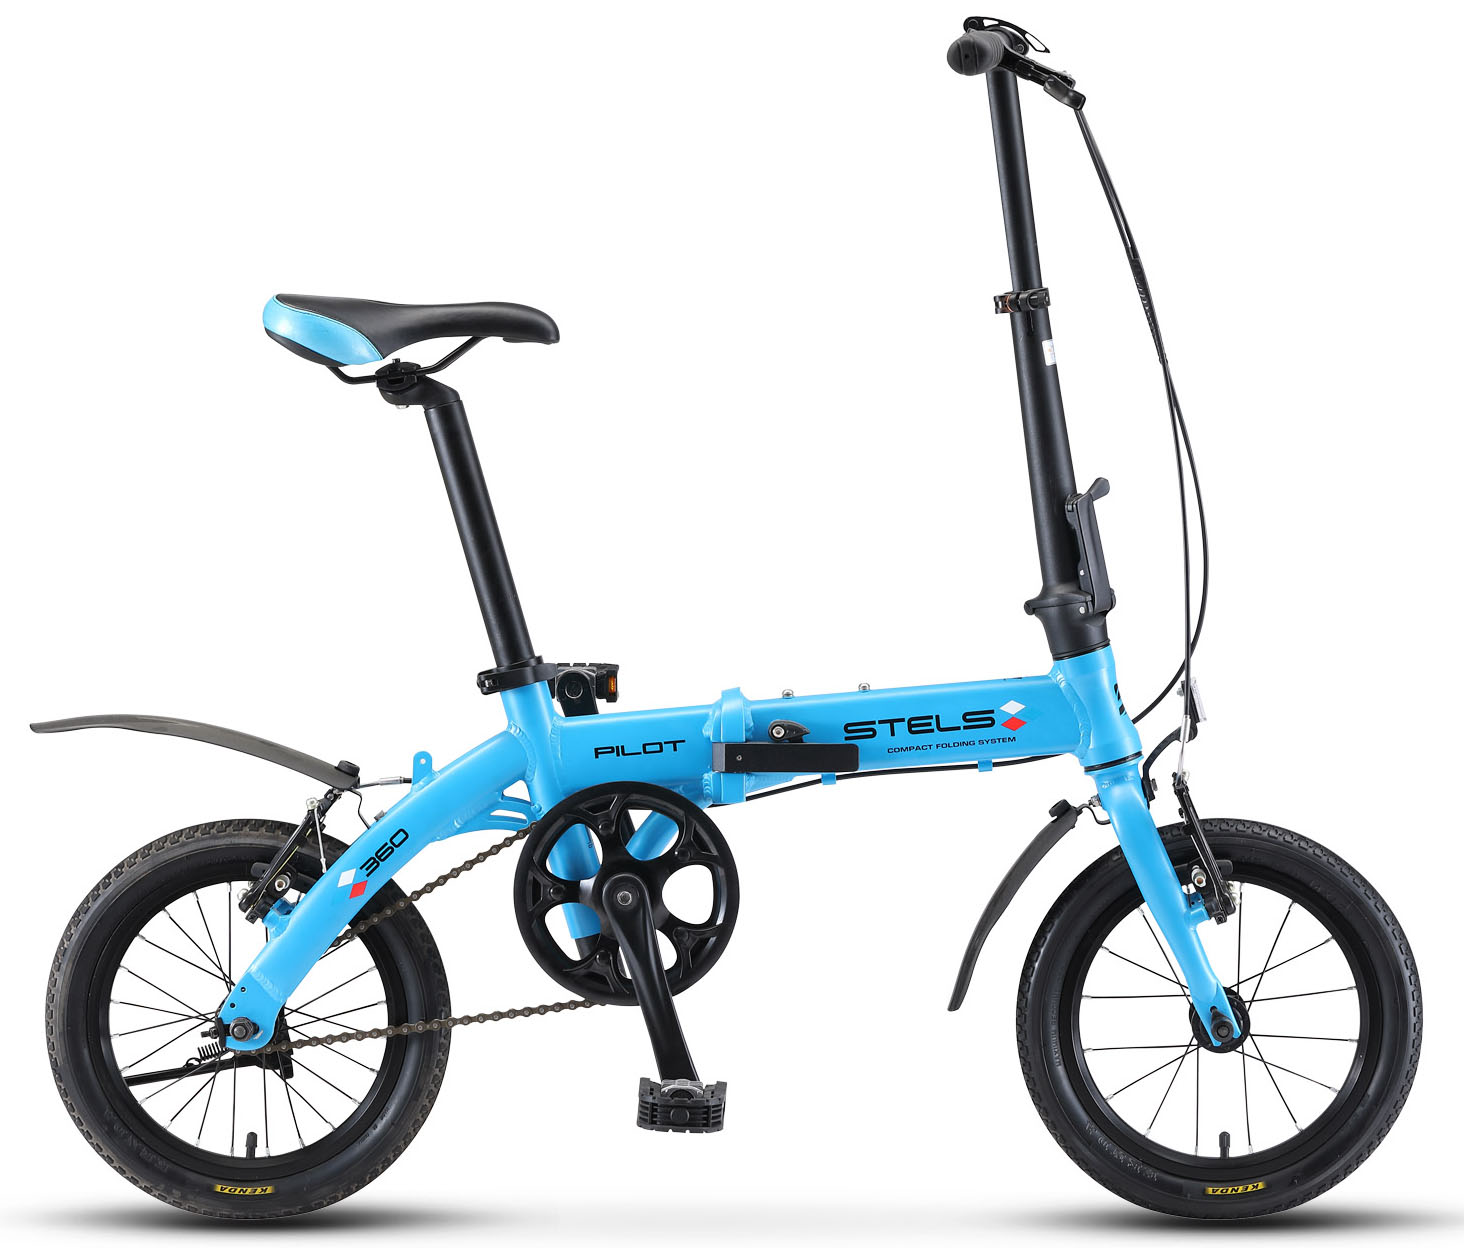  Отзывы о Складном велосипеде Stels Pilot 360 14 V010 2019